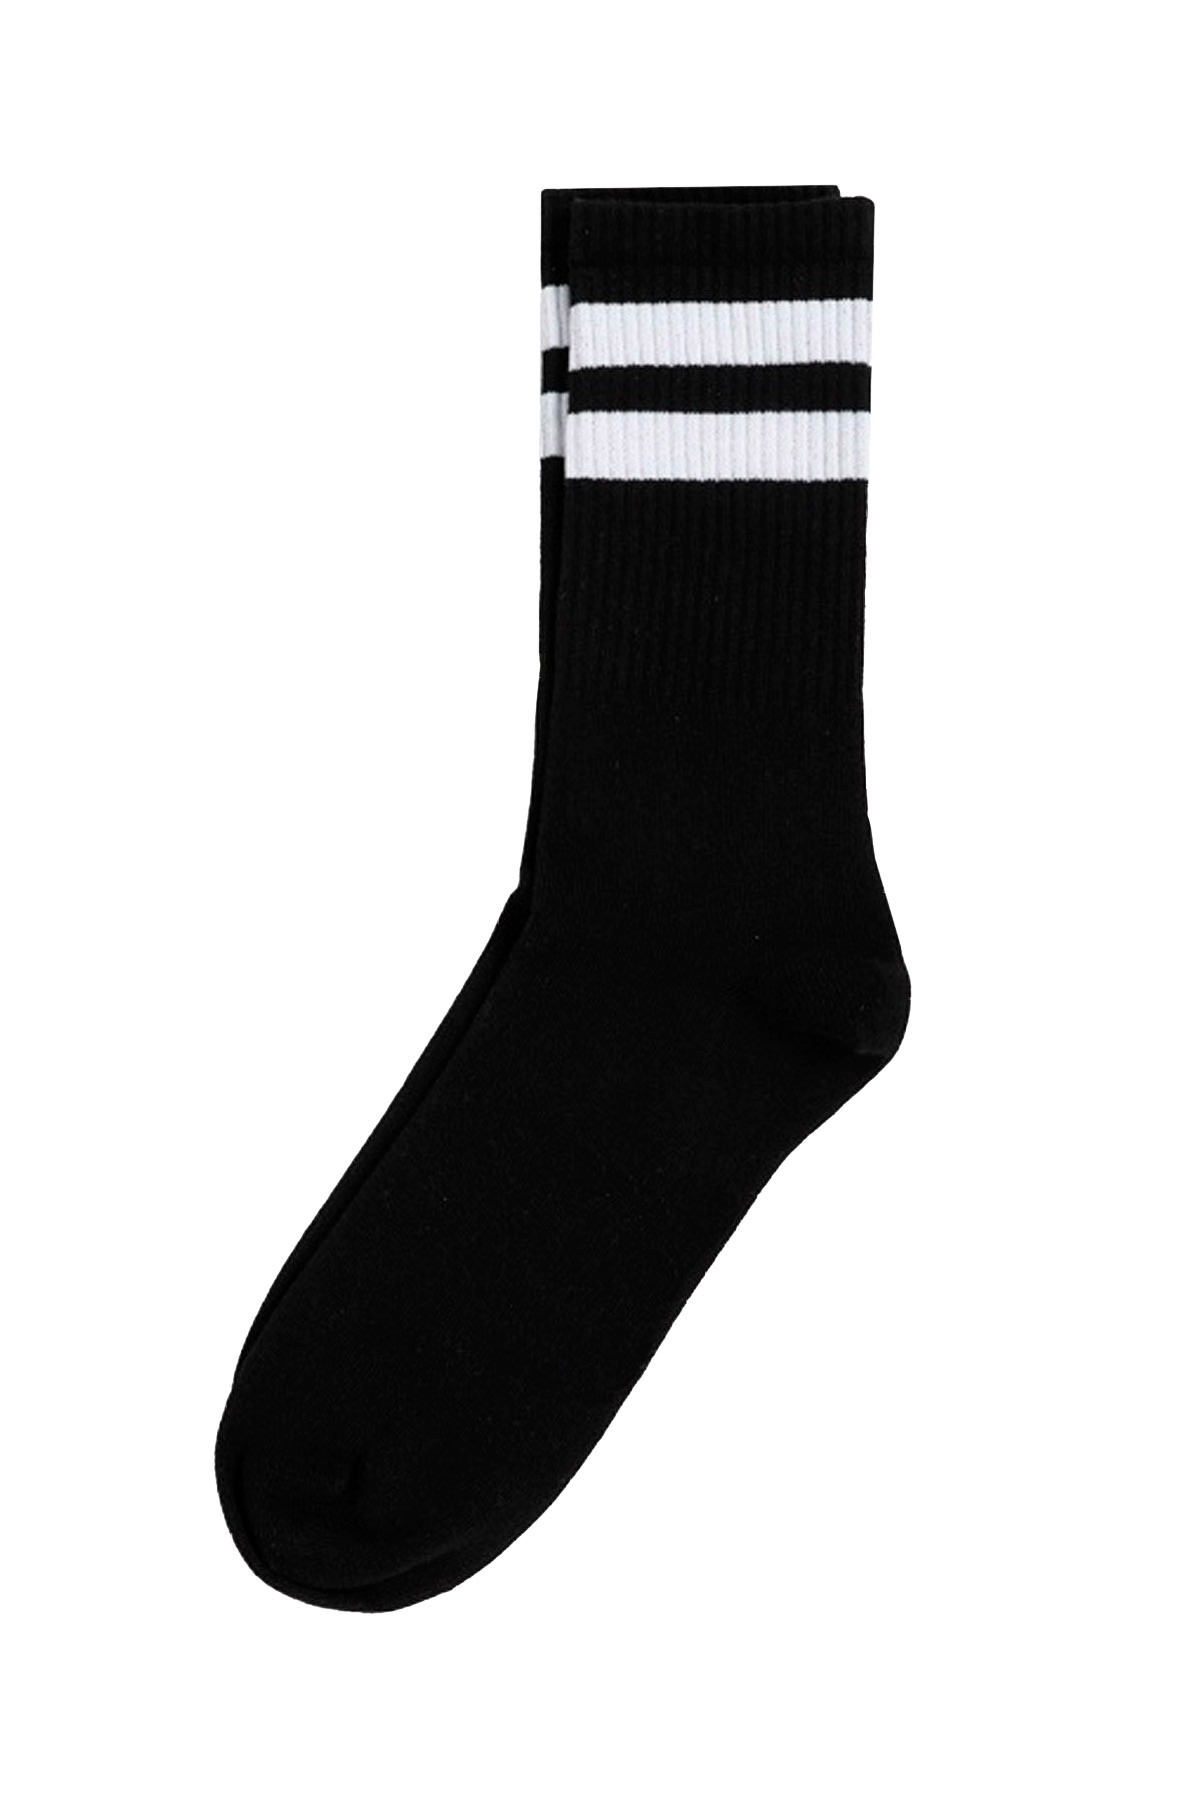 Fitilli Şeritli Spor Çorap (36-44) - SİYAH